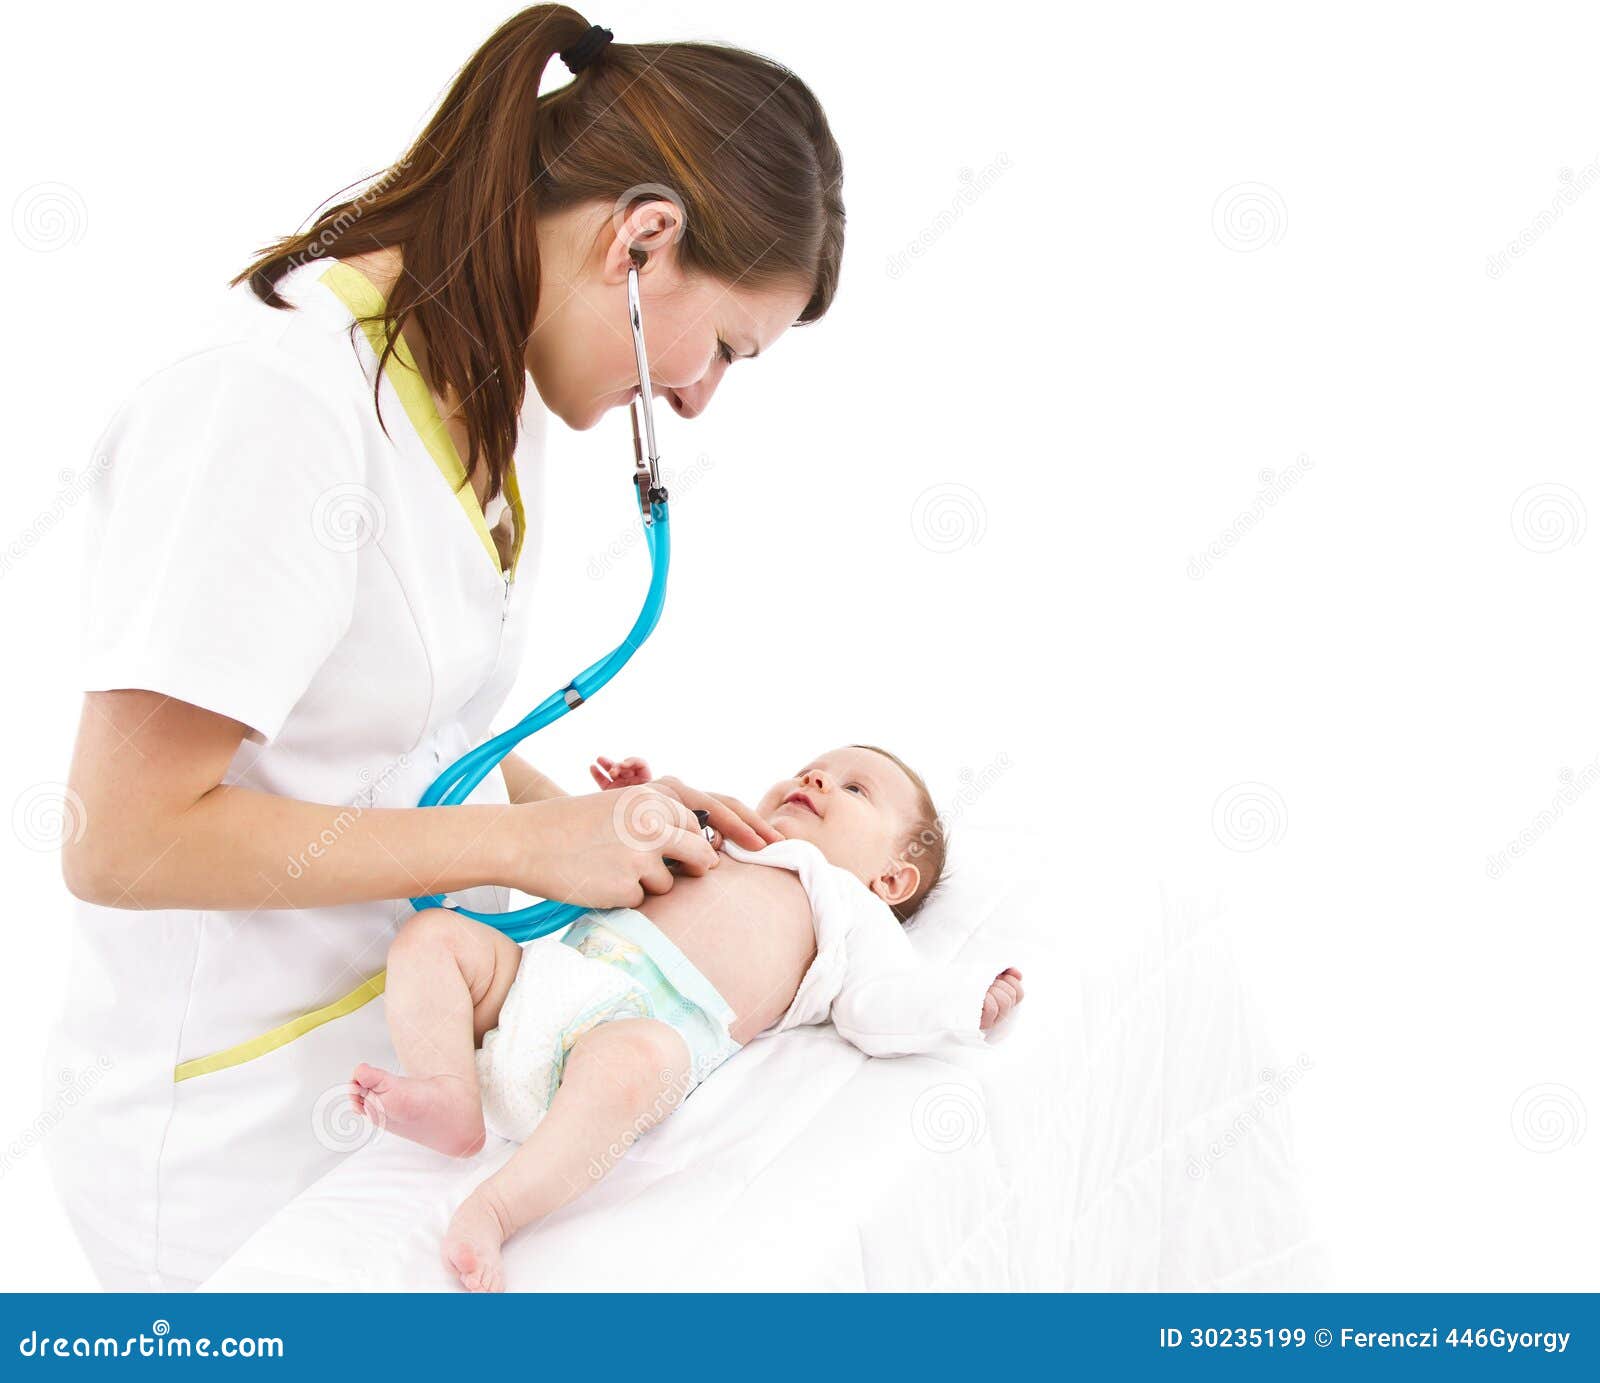 Первые врачи новорожденного